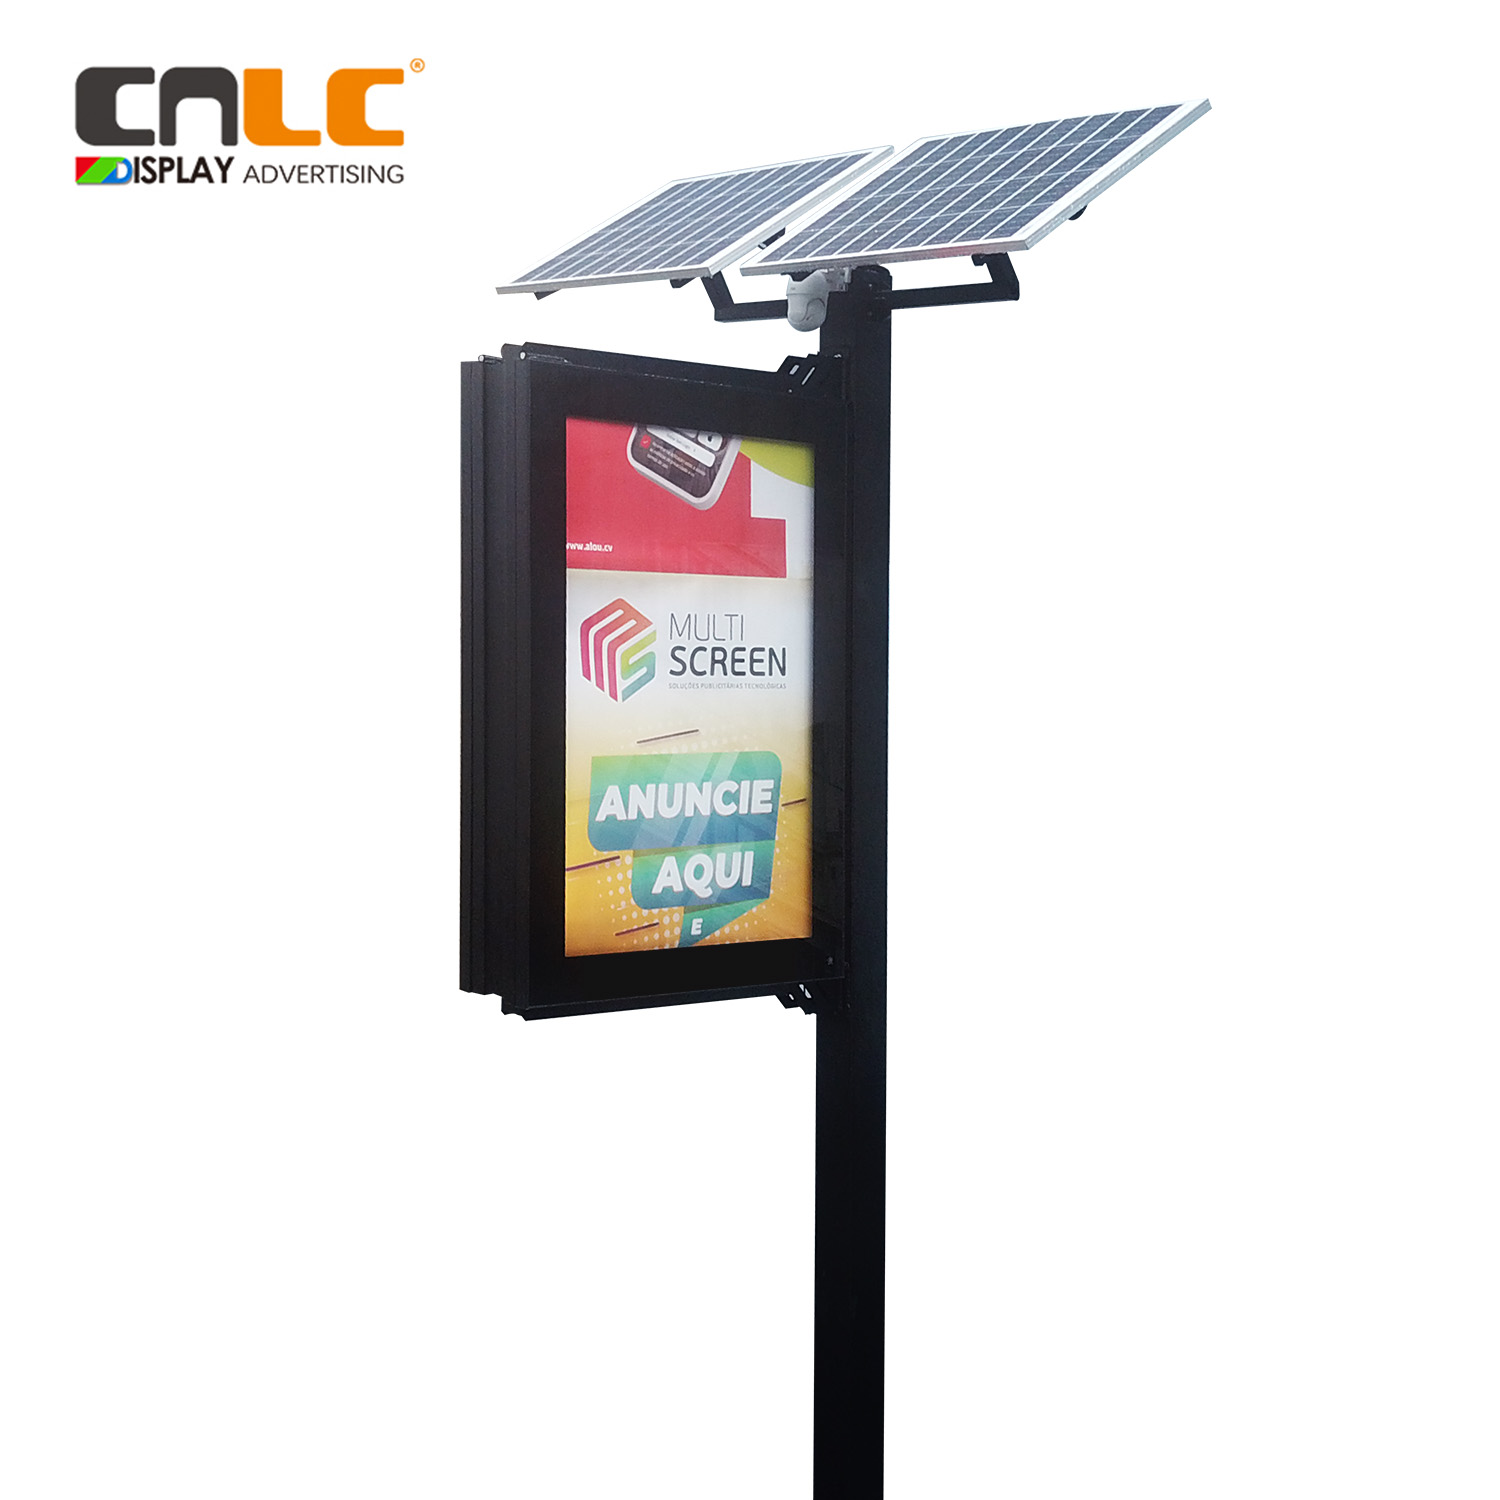 Caisson lumineux pour affiche défilante sur poteau de rue avec panneau solaire